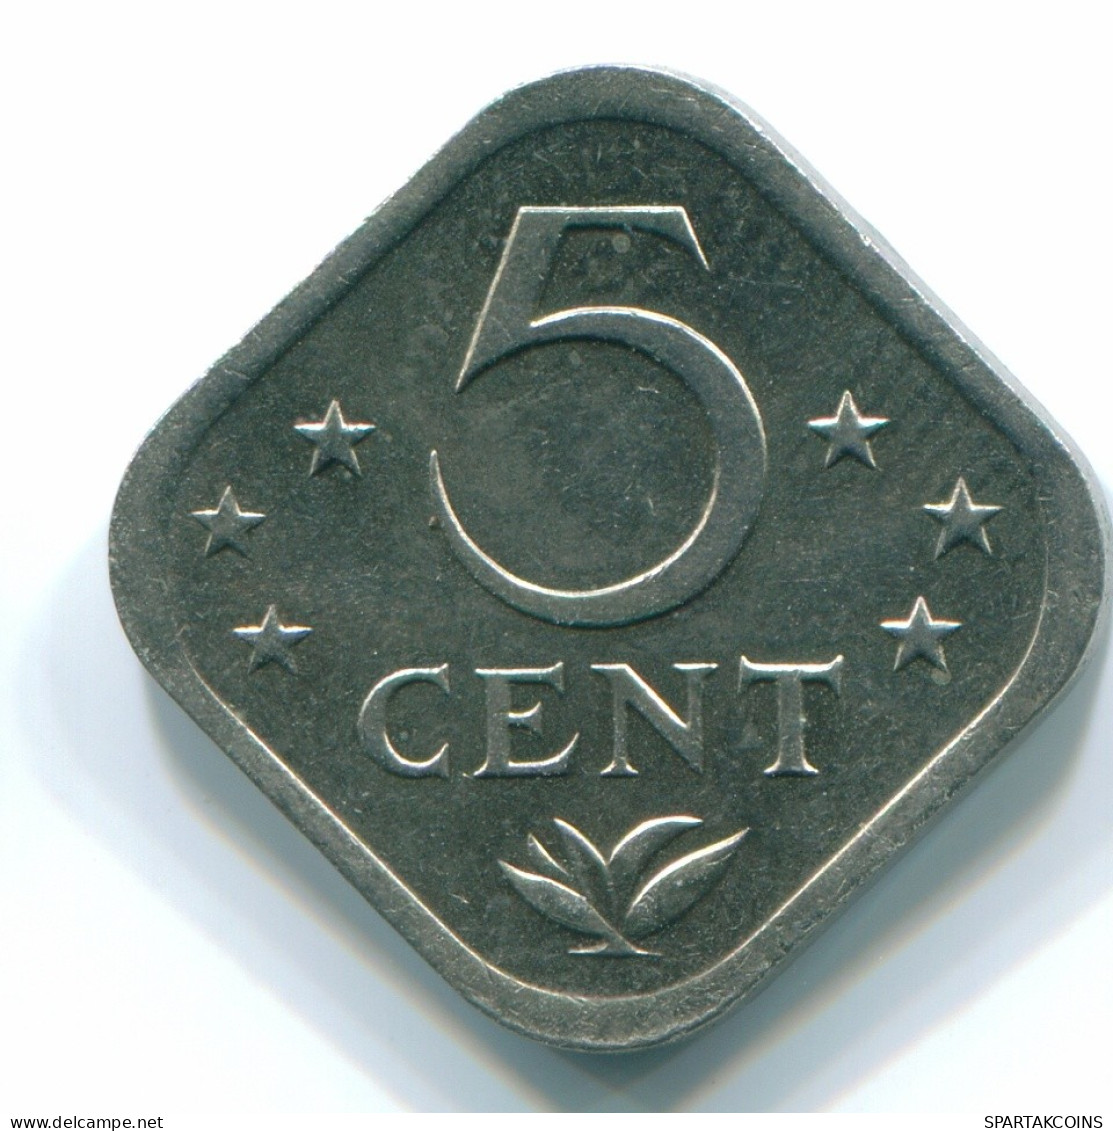 5 CENTS 1982 NIEDERLÄNDISCHE ANTILLEN Nickel Koloniale Münze #S12353.D.A - Niederländische Antillen